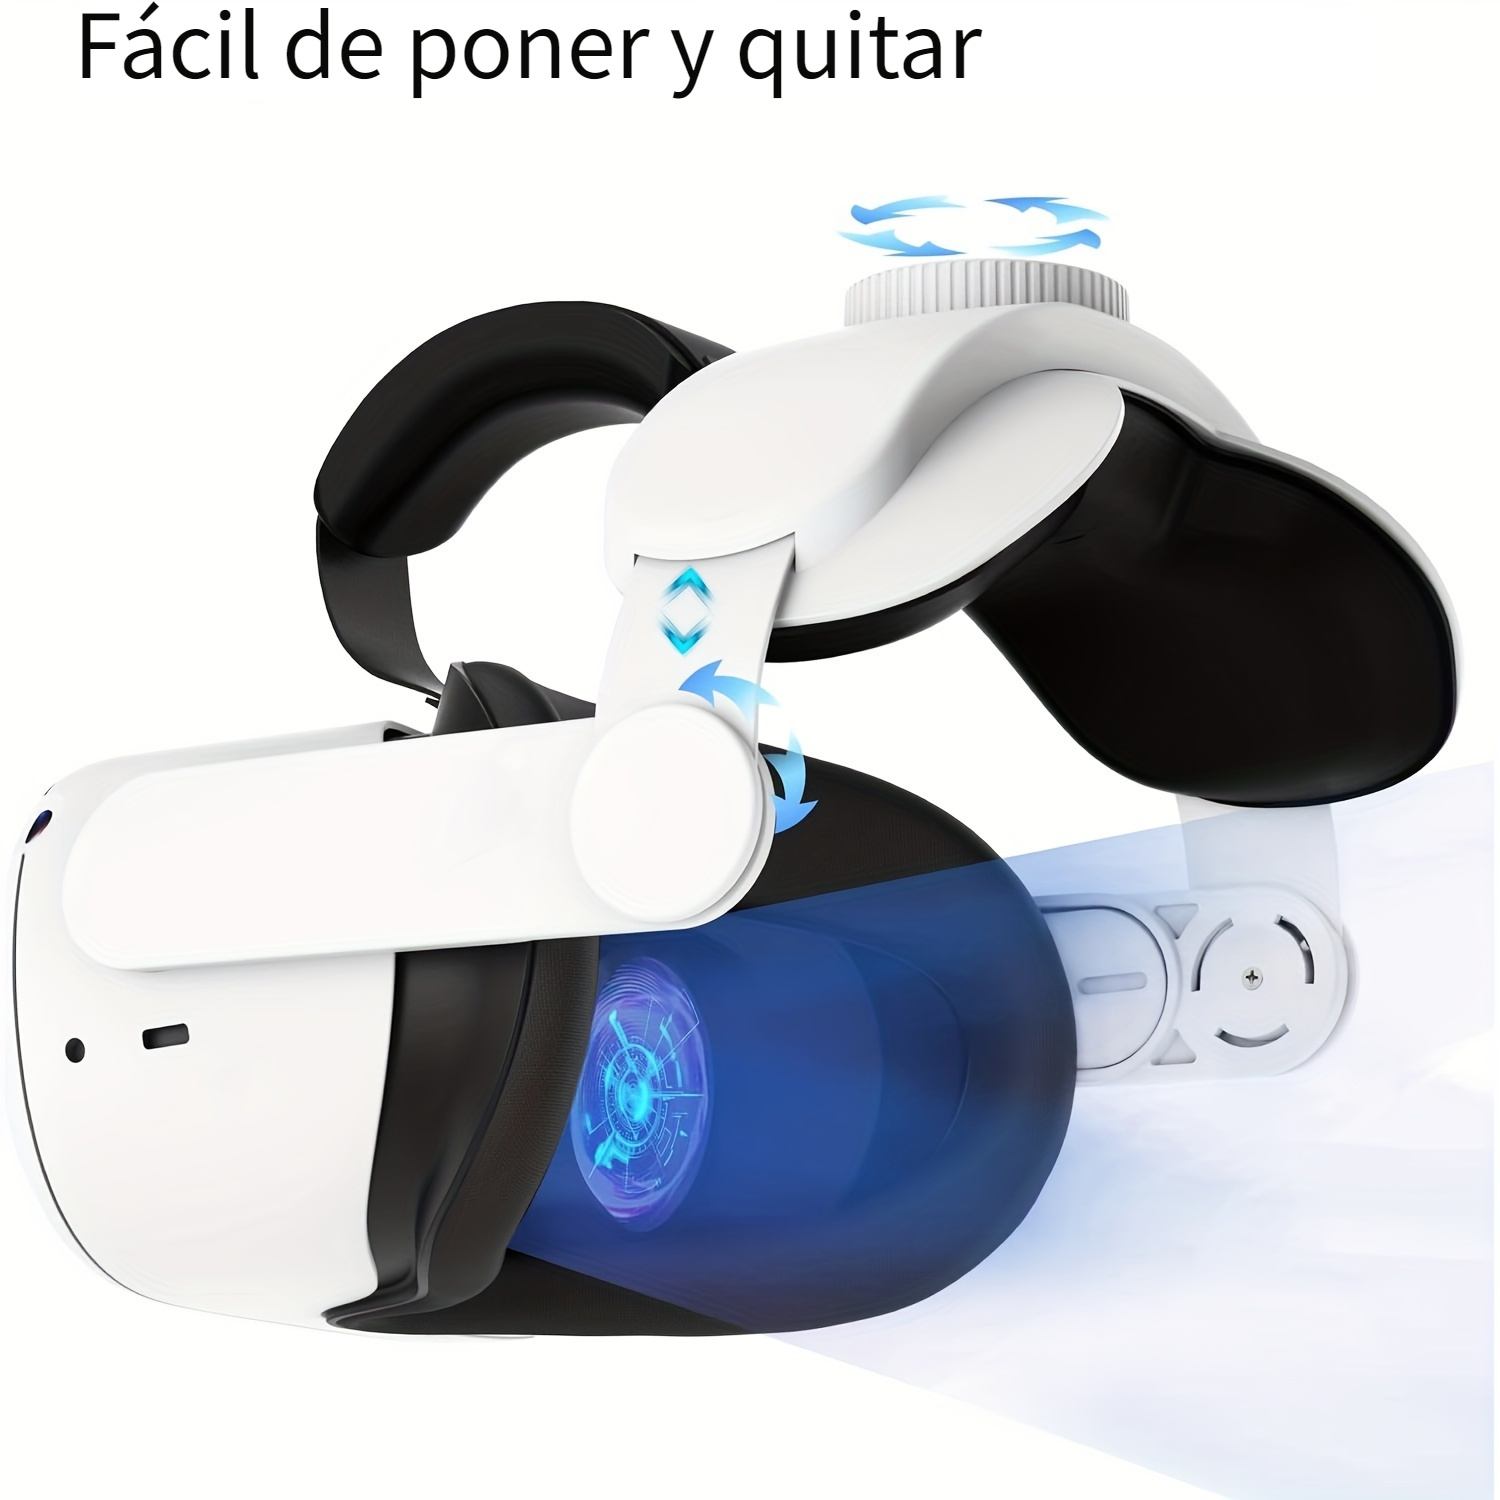 Correa para la cabeza compatible con Oculus Quest 3, accesorios Meta Quest  3, correa ajustable Elite repuesto para mayor comodidad soporte e inmersión